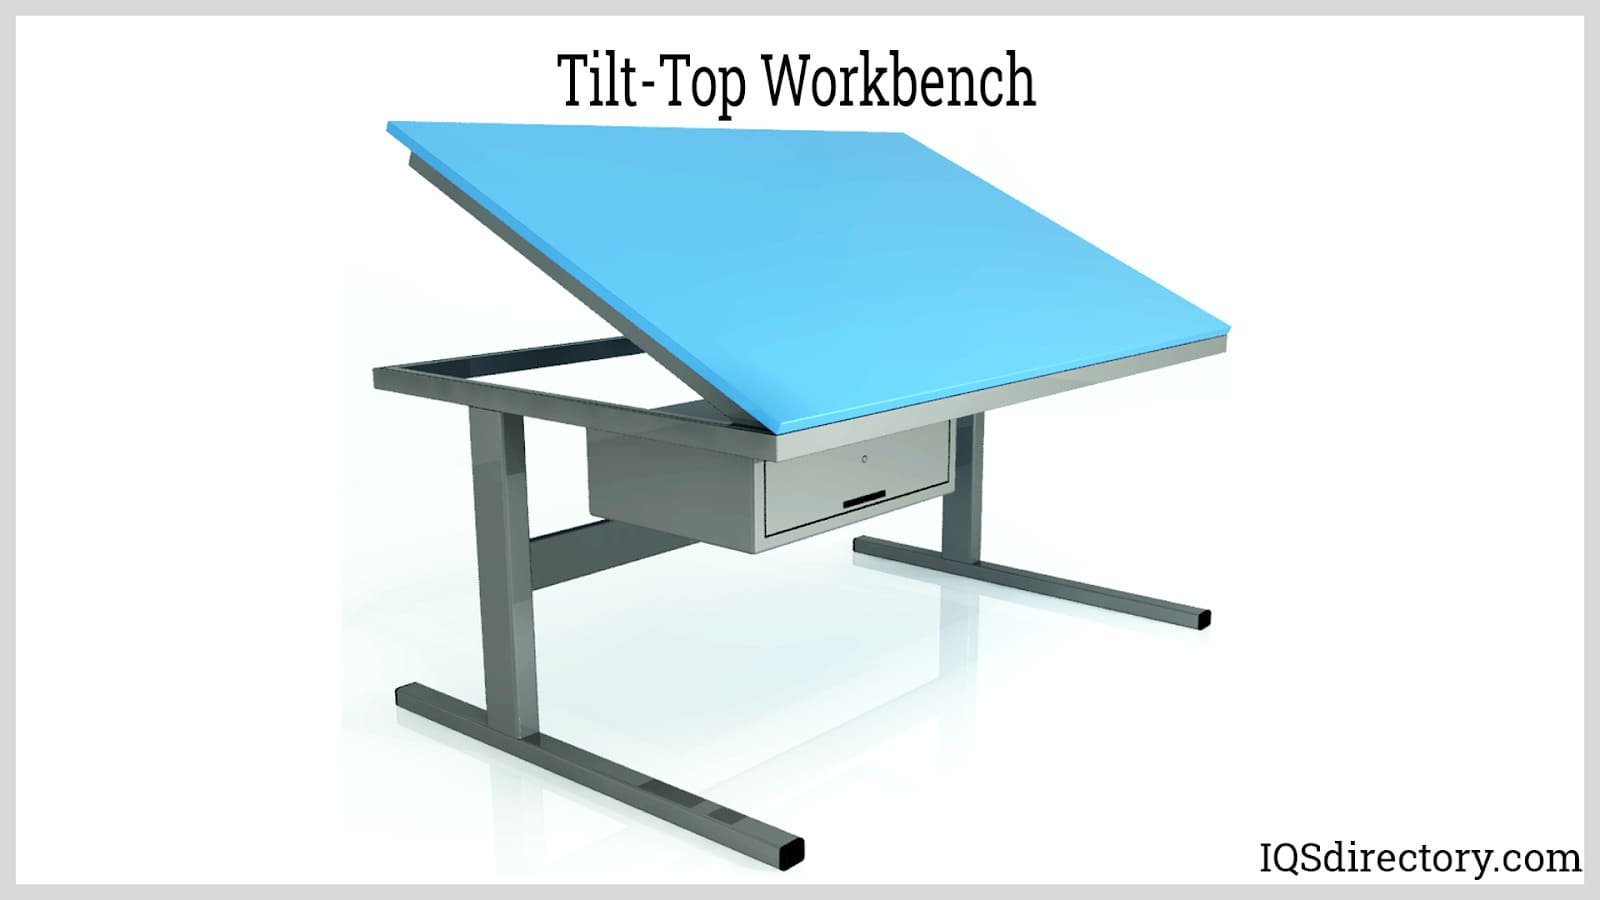 Tilt-Top Workbench